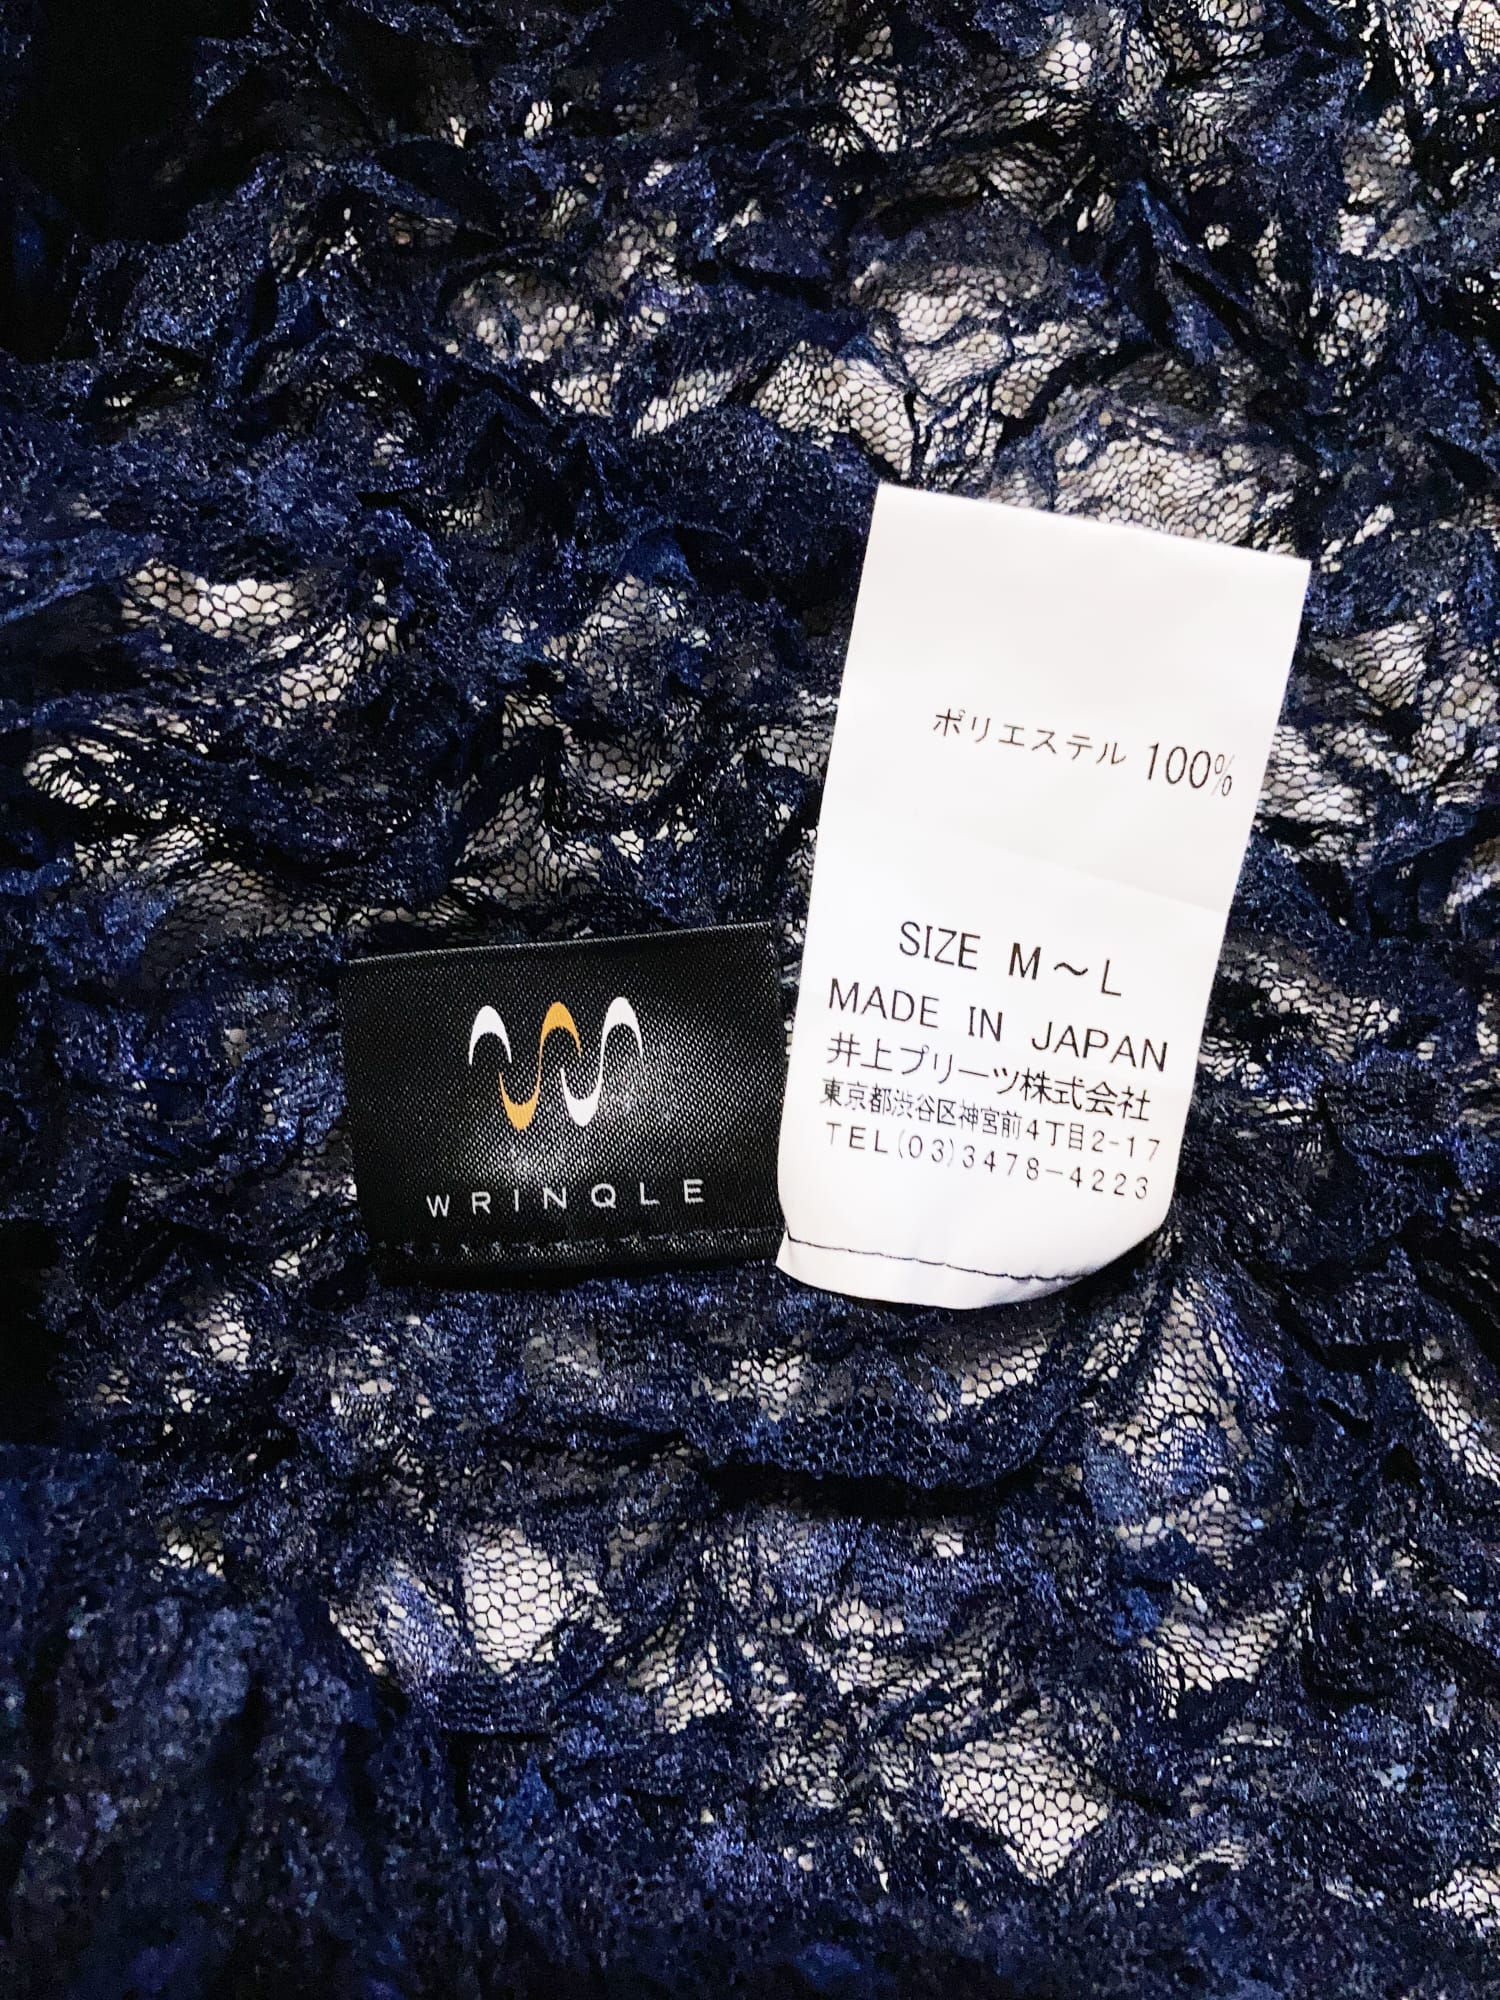 Wrinqle Inoue Pleats sheer dark navy wrinkled lace cap sleeve crop top